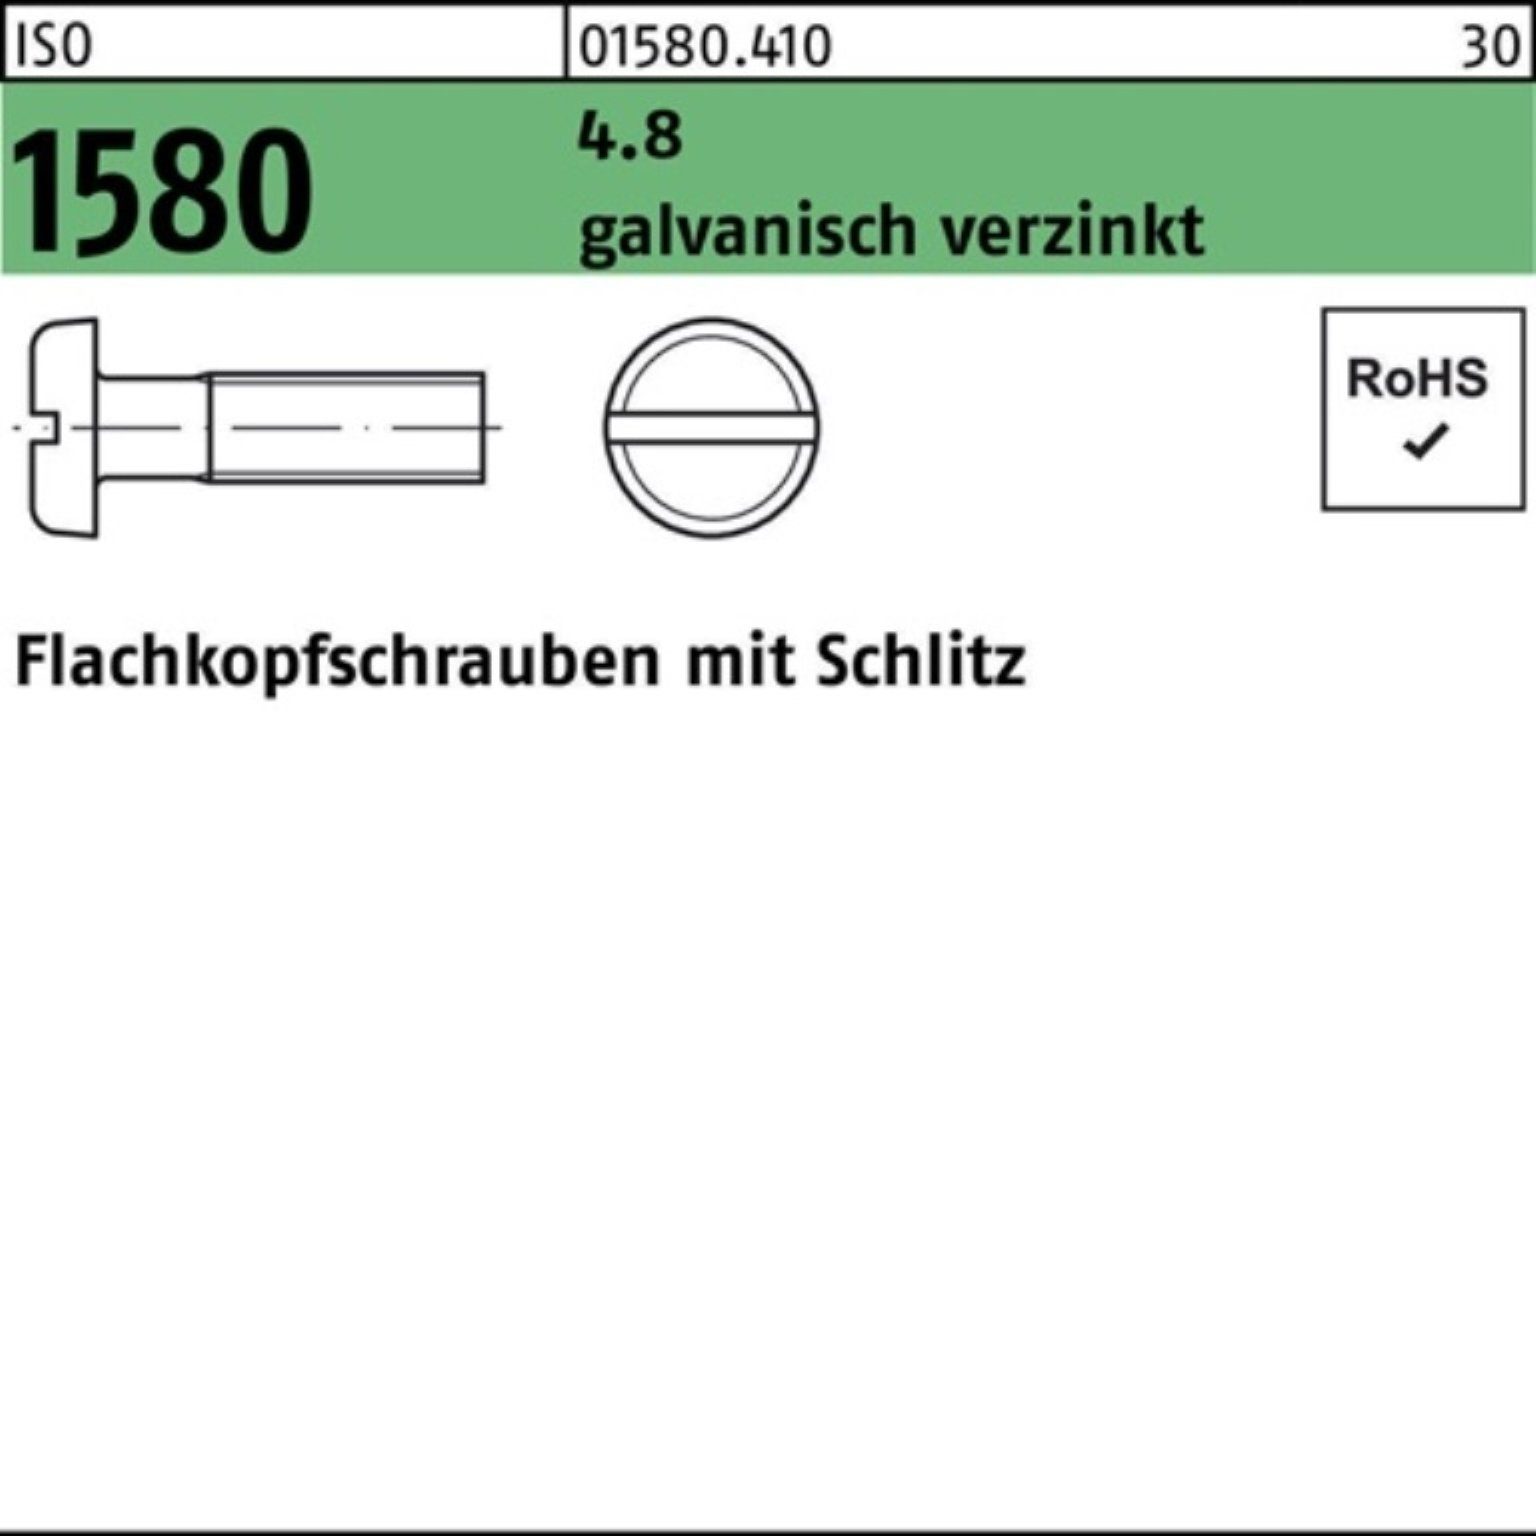 ISO Flachkopfschraube 1580 4.8 1 Reyher 10 Schlitz 1000er Pack galv.verz. Schraube M6x